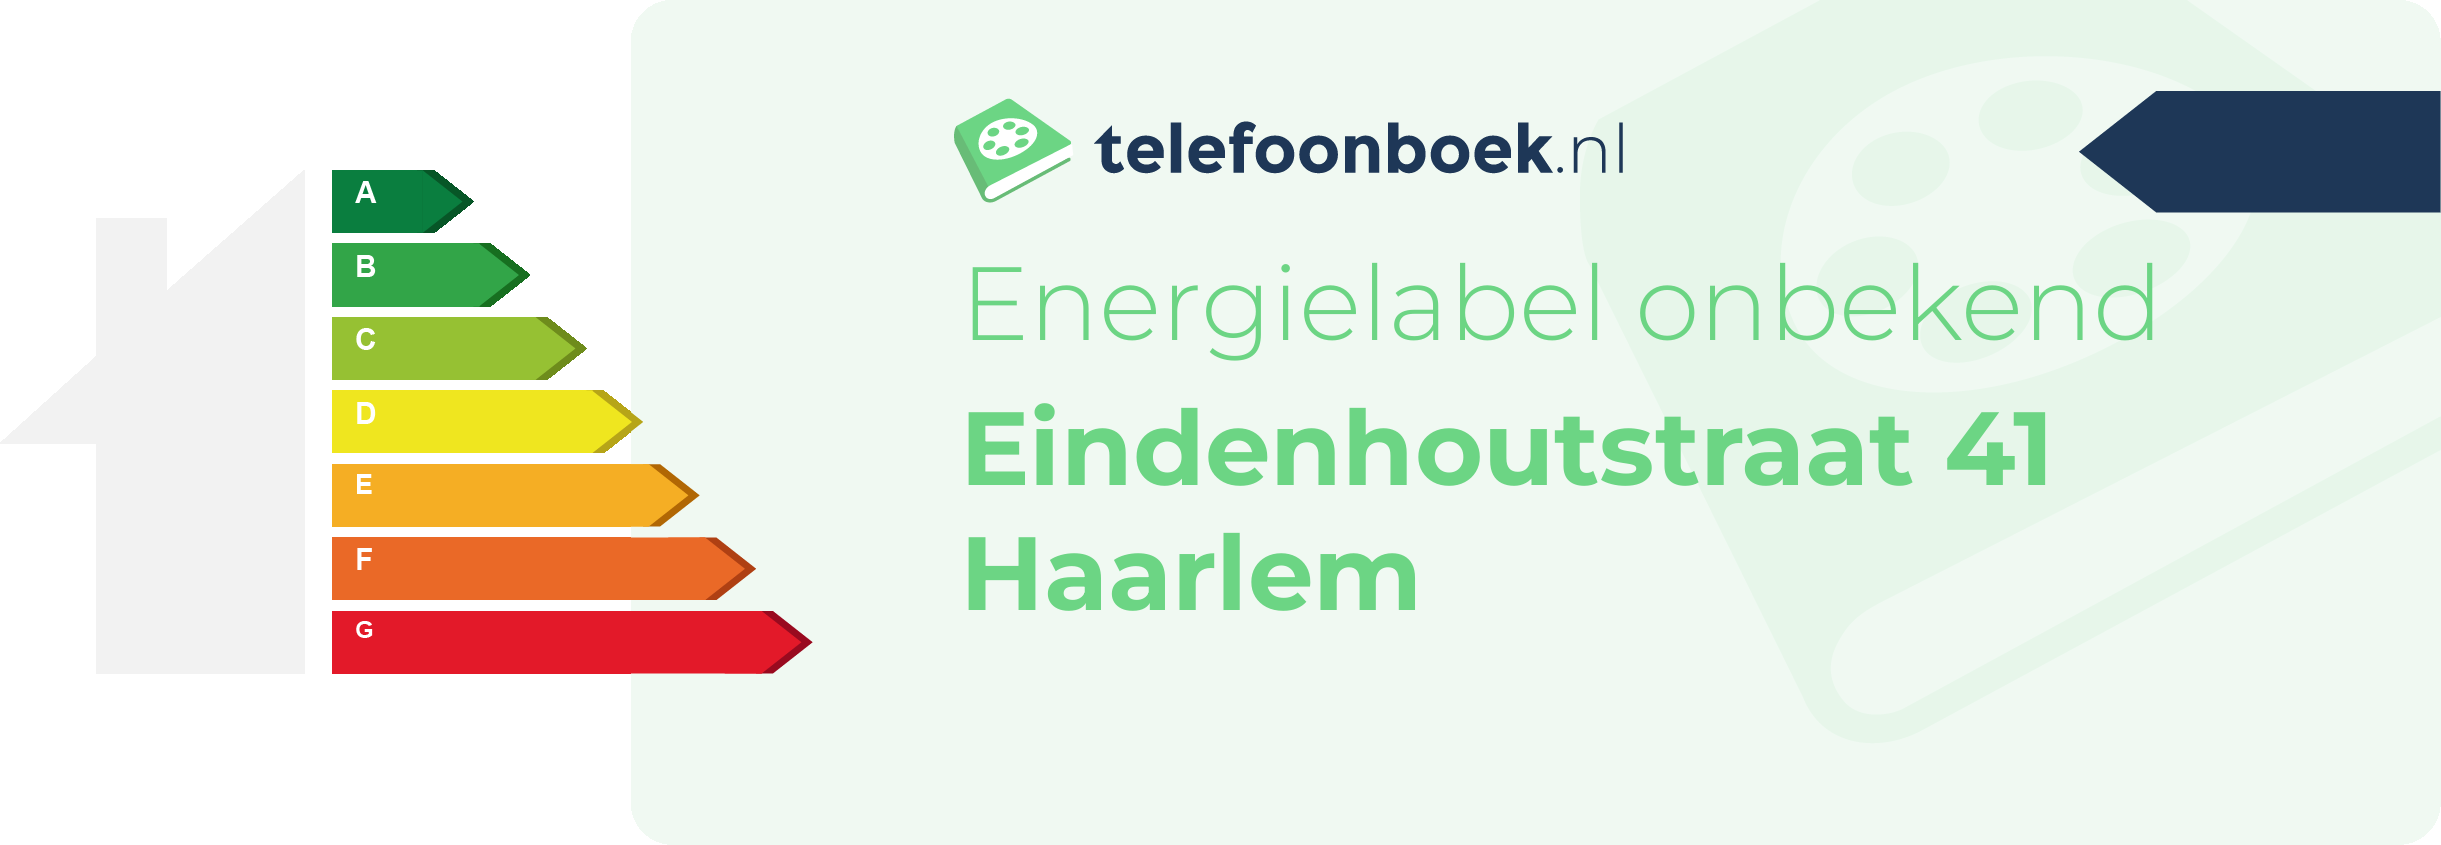 Energielabel Eindenhoutstraat 41 Haarlem